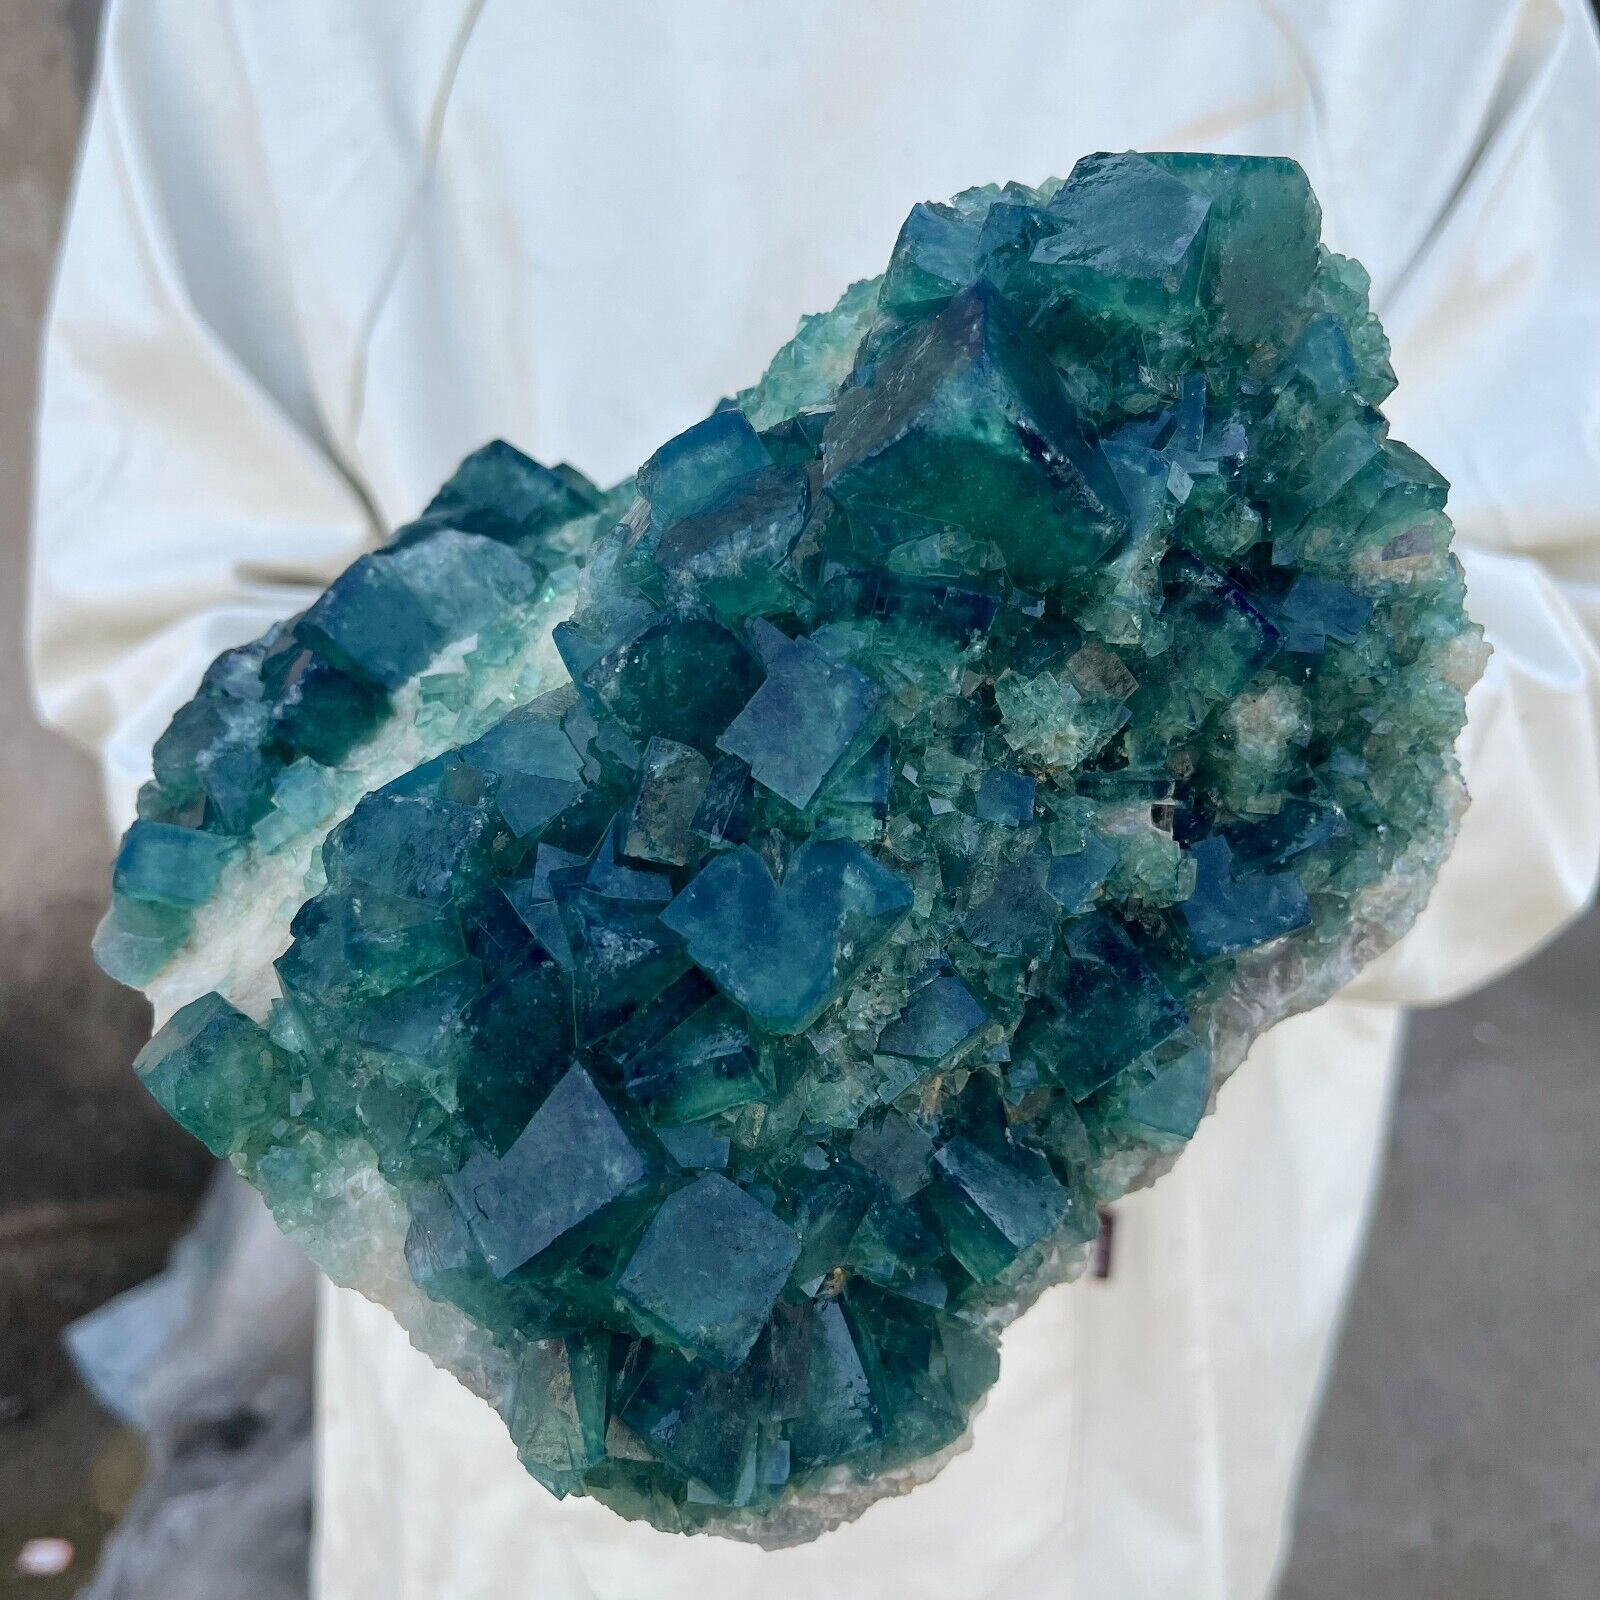 10.7lb Large NATURAL Green Cube FLUORITE Quartz Crystal Cluster Mineral Specimen